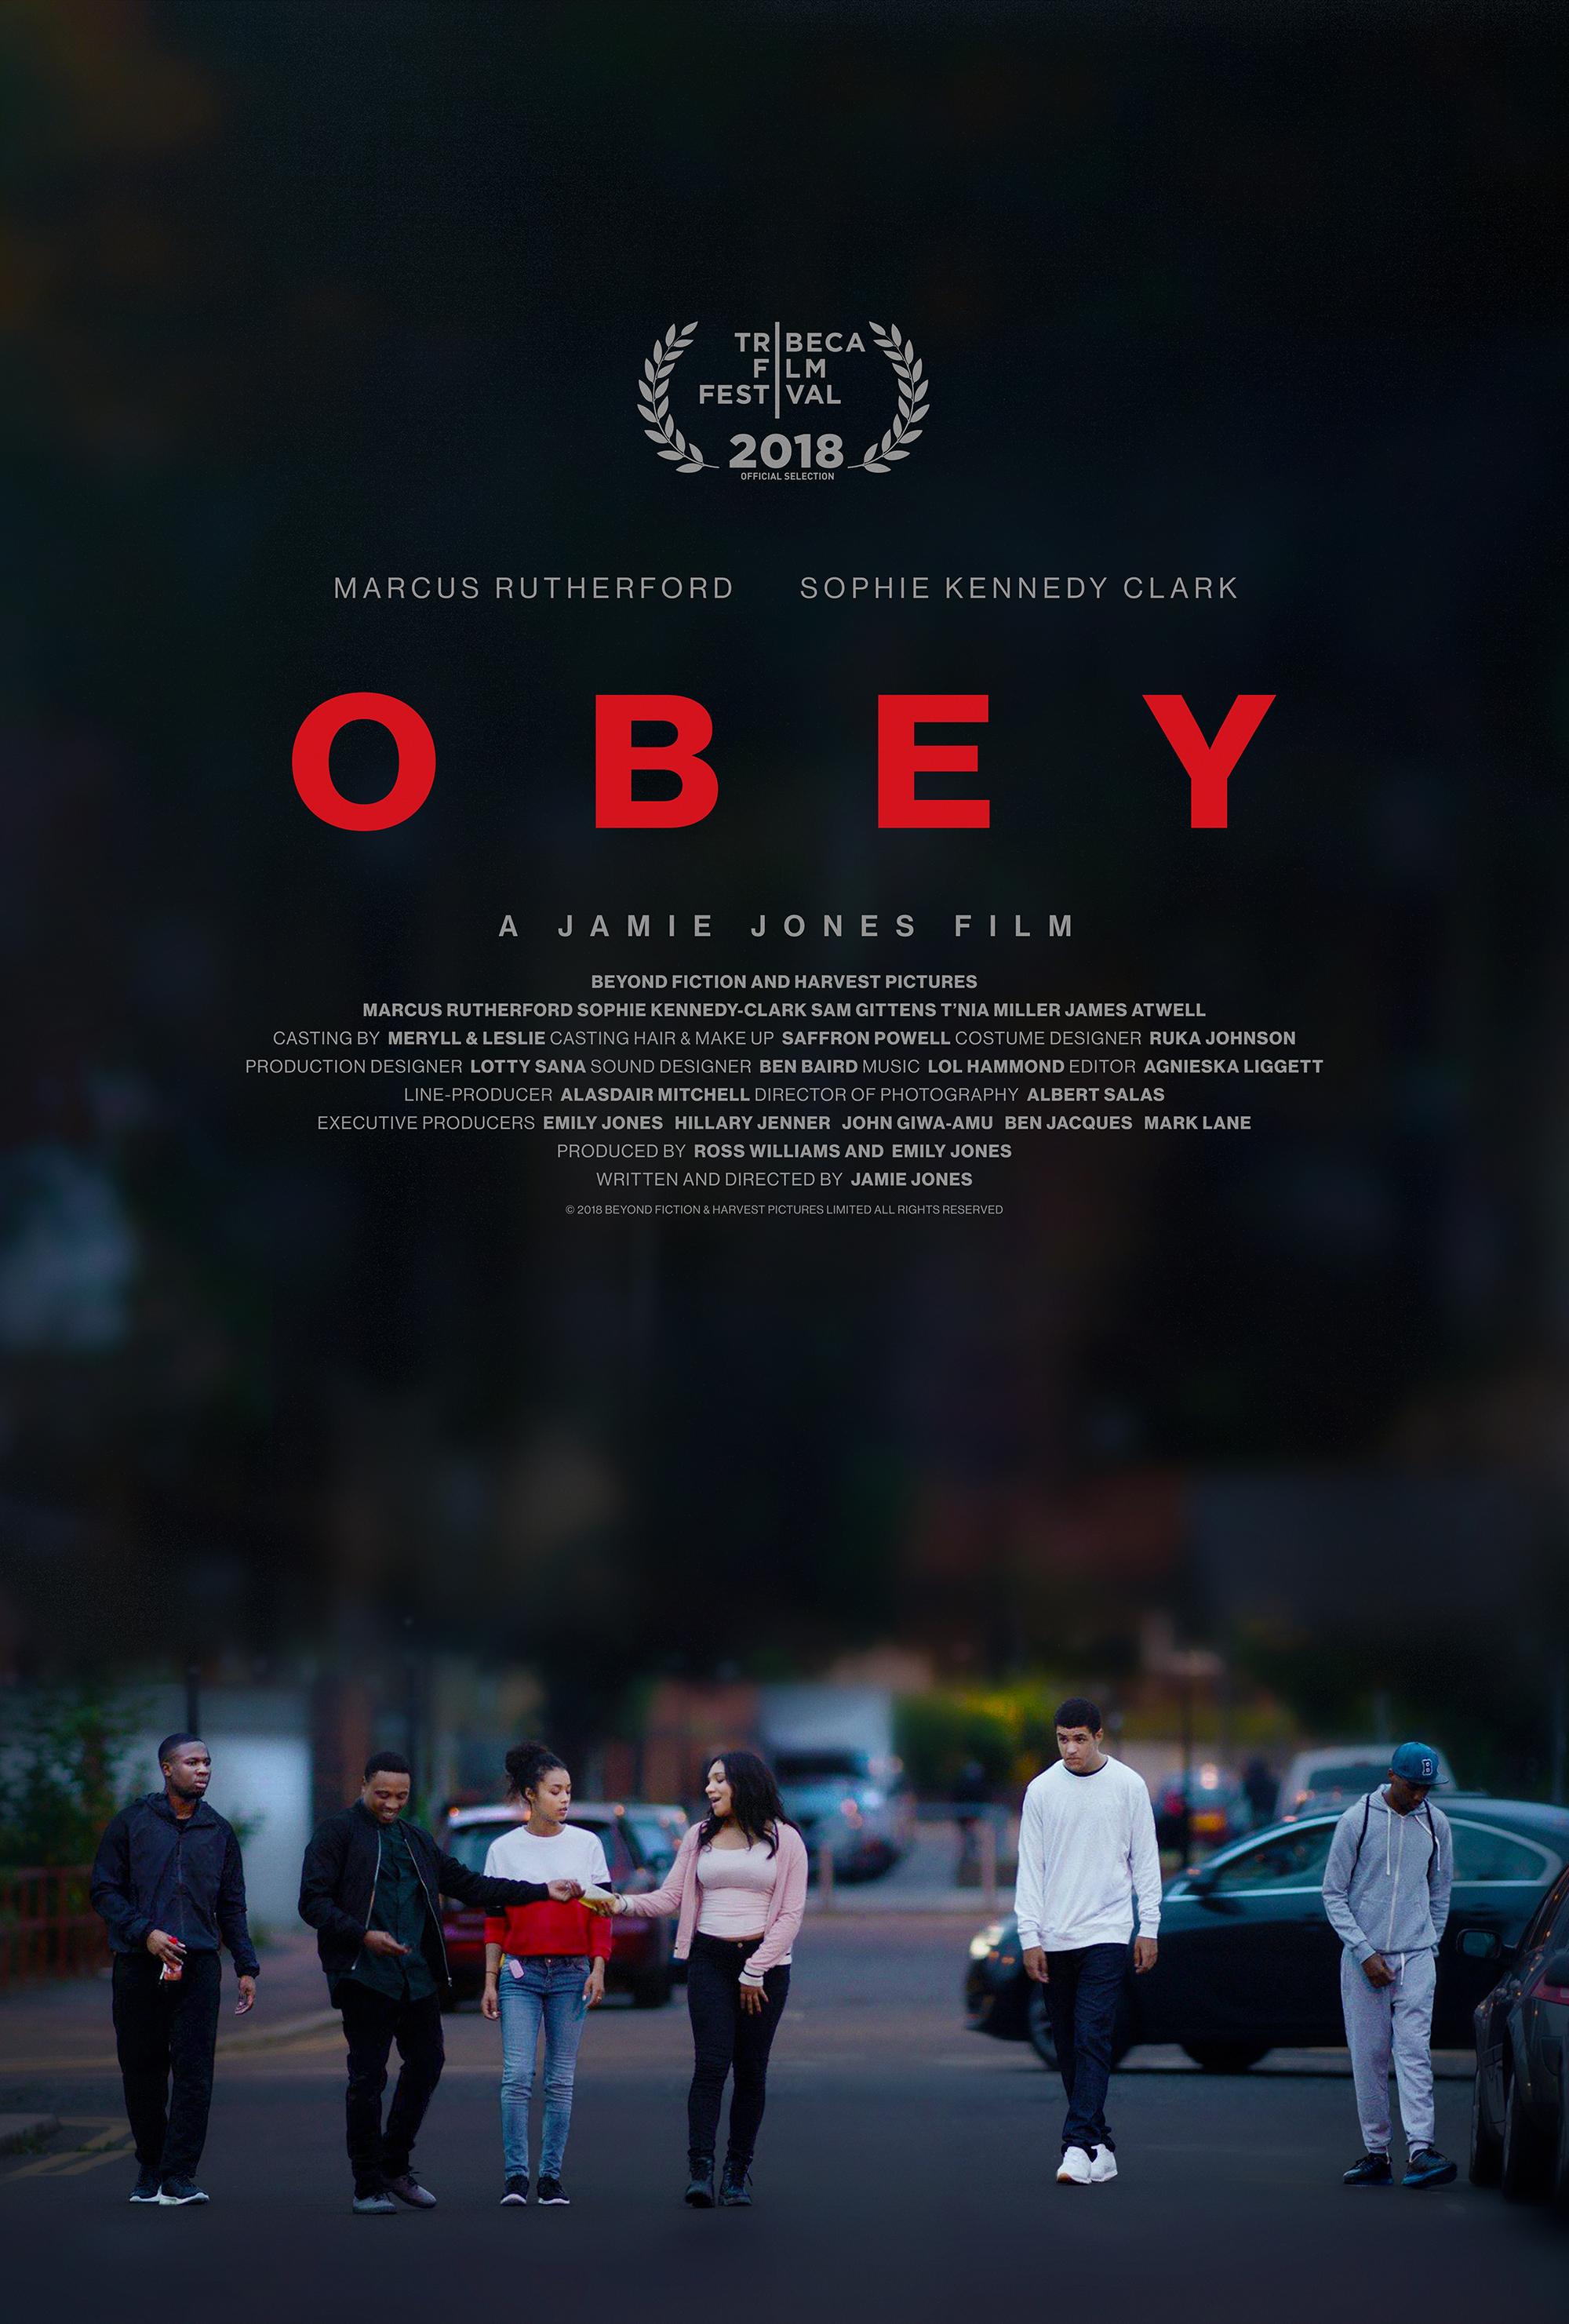 Nonton film Obey layarkaca21 indoxx1 ganool online streaming terbaru